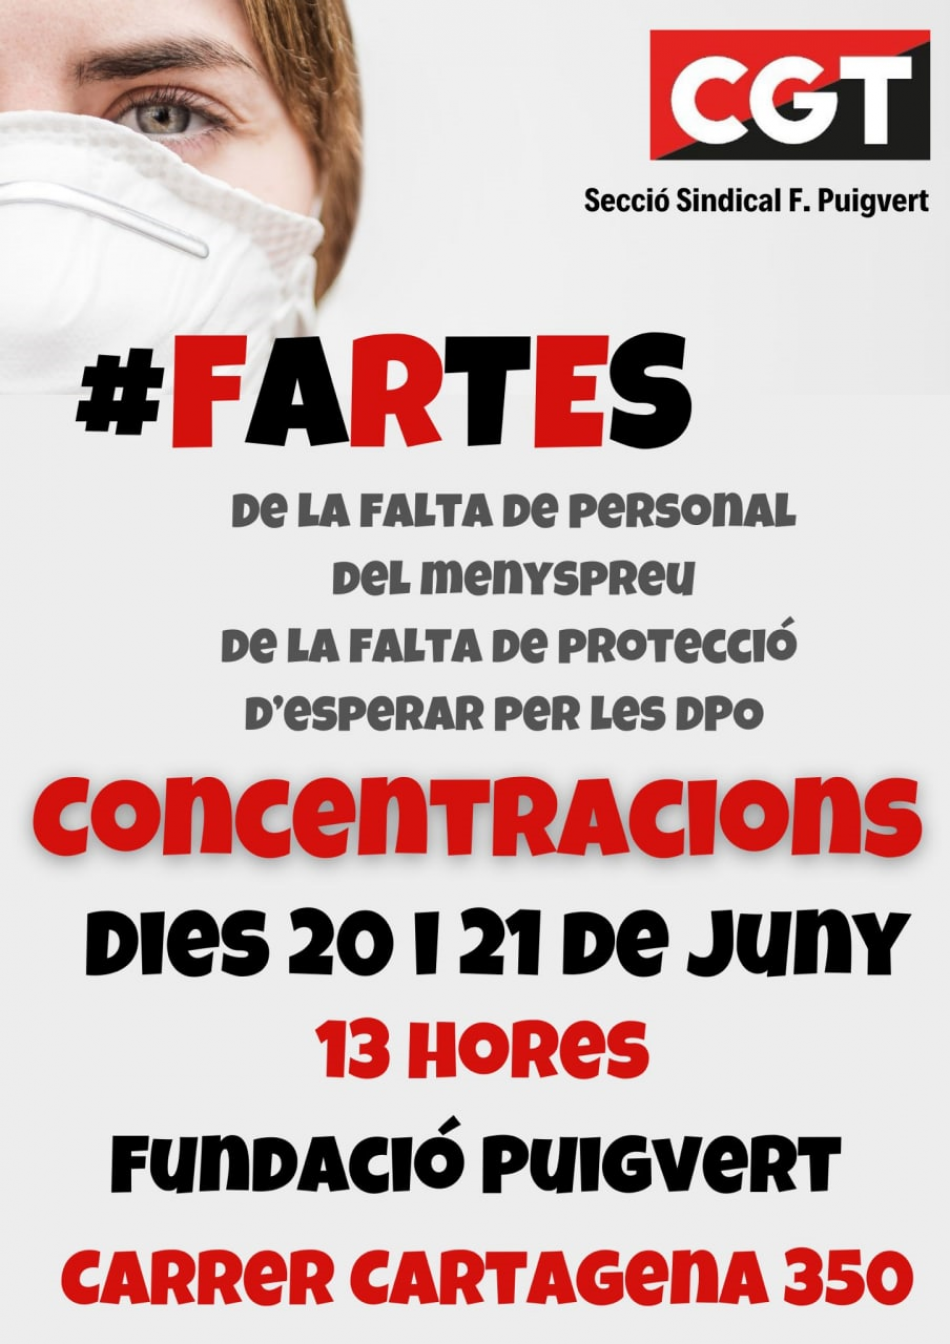 CGT Fundació Puigvert: la plantilla estan #FARTES